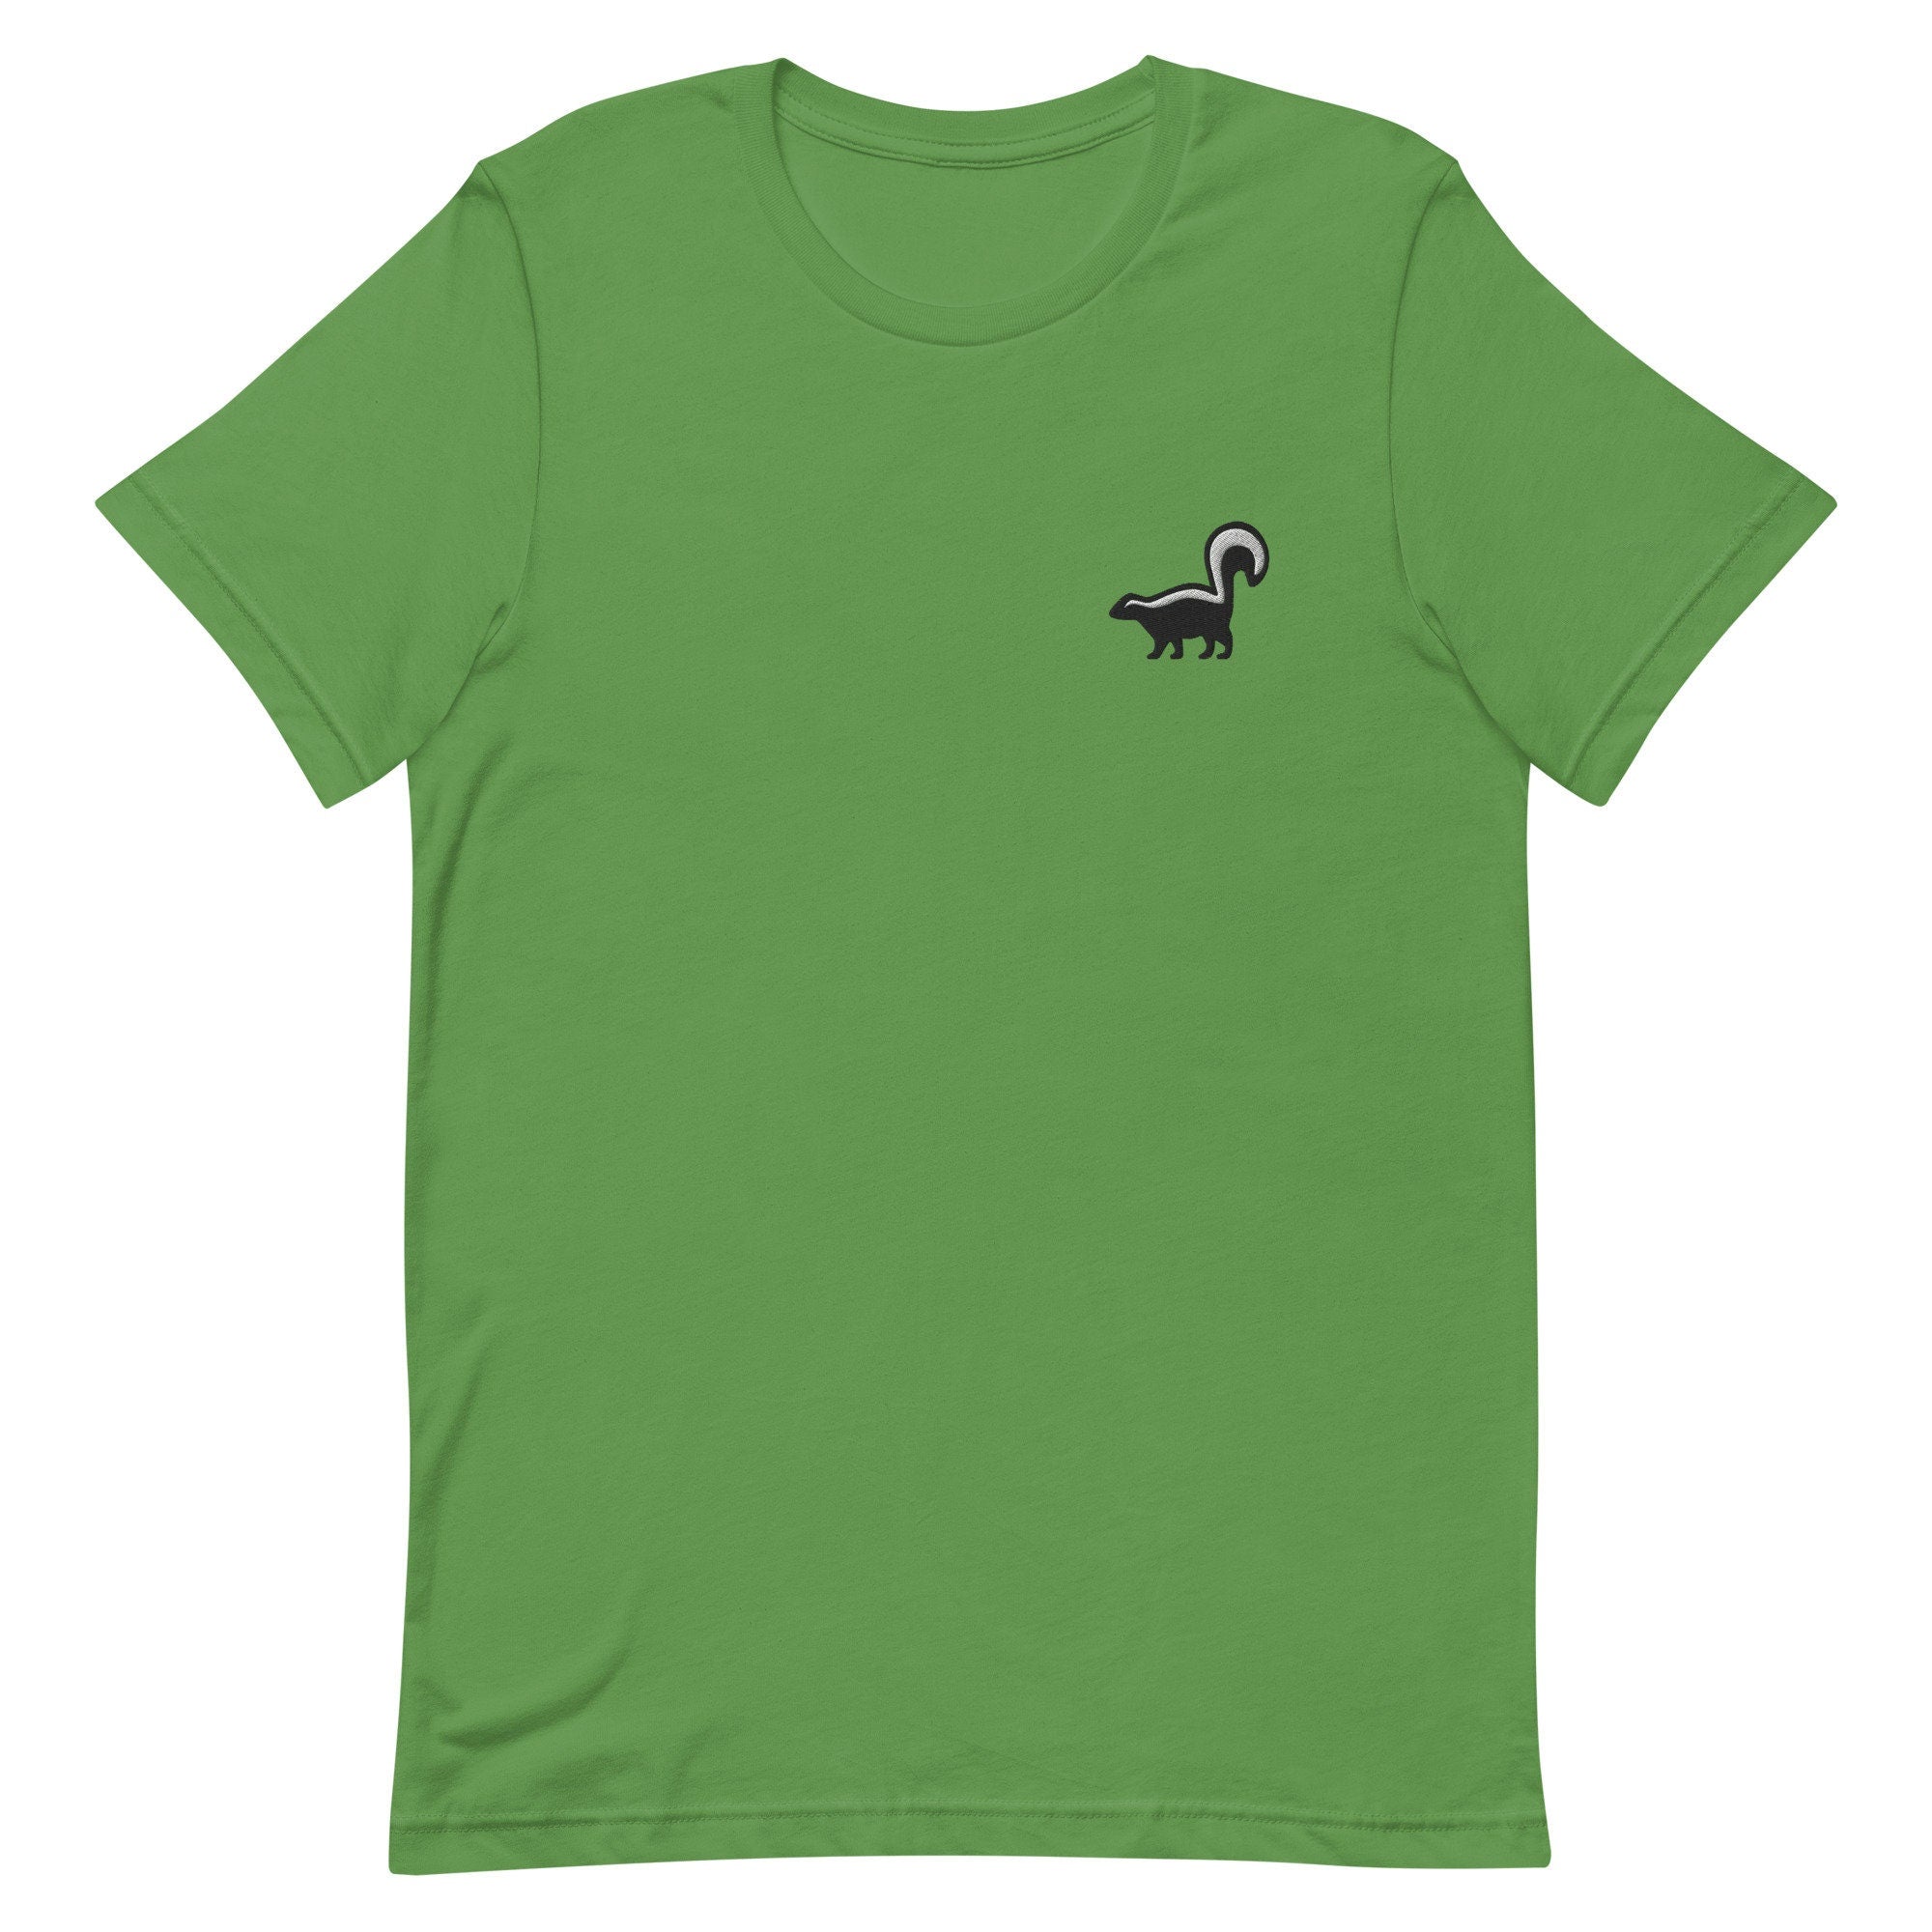 Skunk Premium Men's T-Shirt, Embroidered Men's T-Shirt Gift for Boyfriend, Men's Short Sleeve Shirt - Multiple Colors